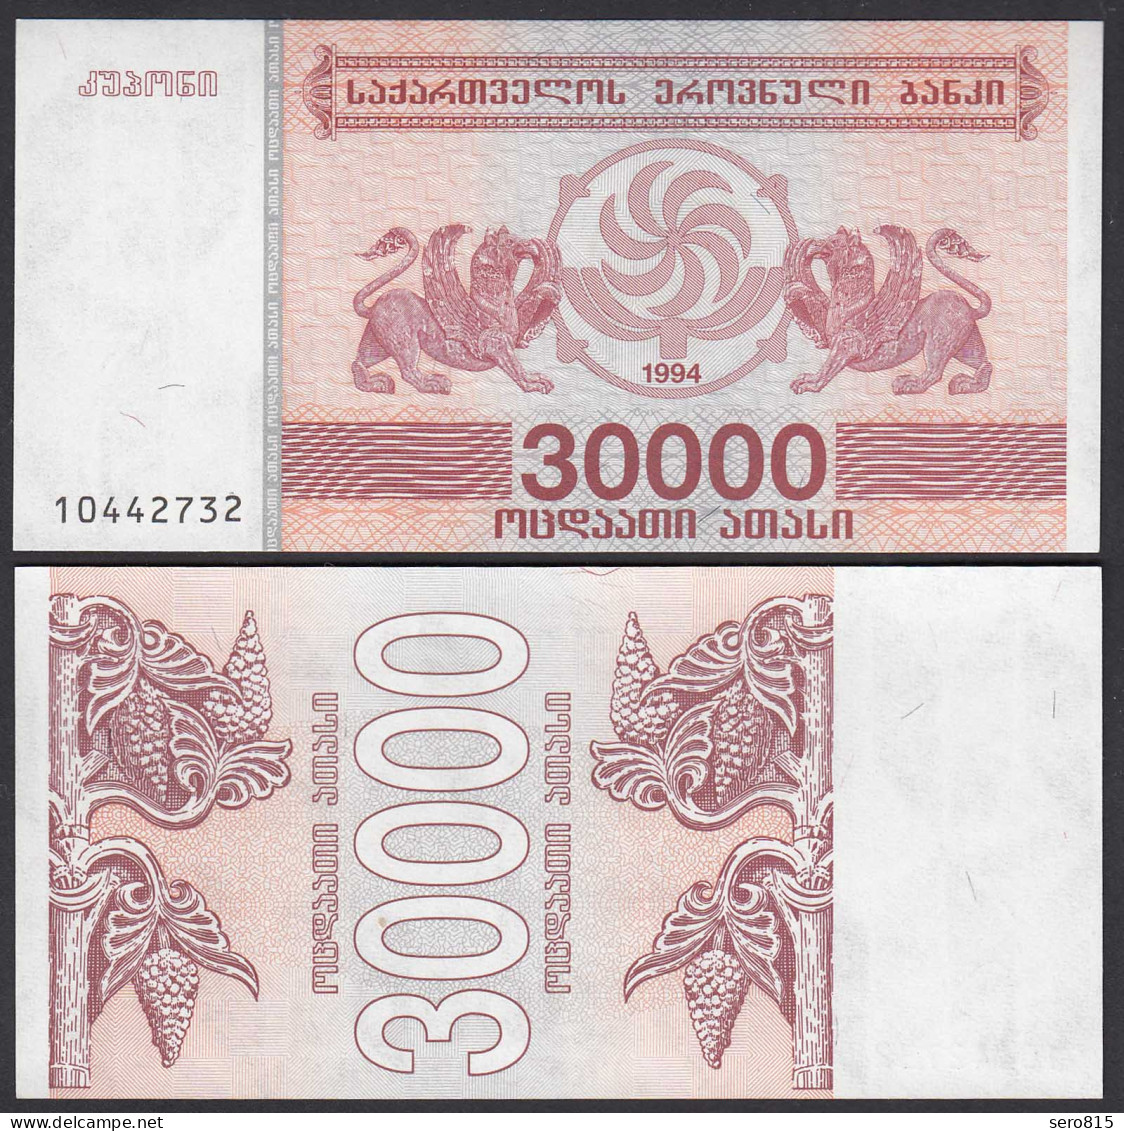  Georgien - Georgia 30000 30.000 Lari 1994 Pick 47 UNC (1)    (25577 - Other - Asia